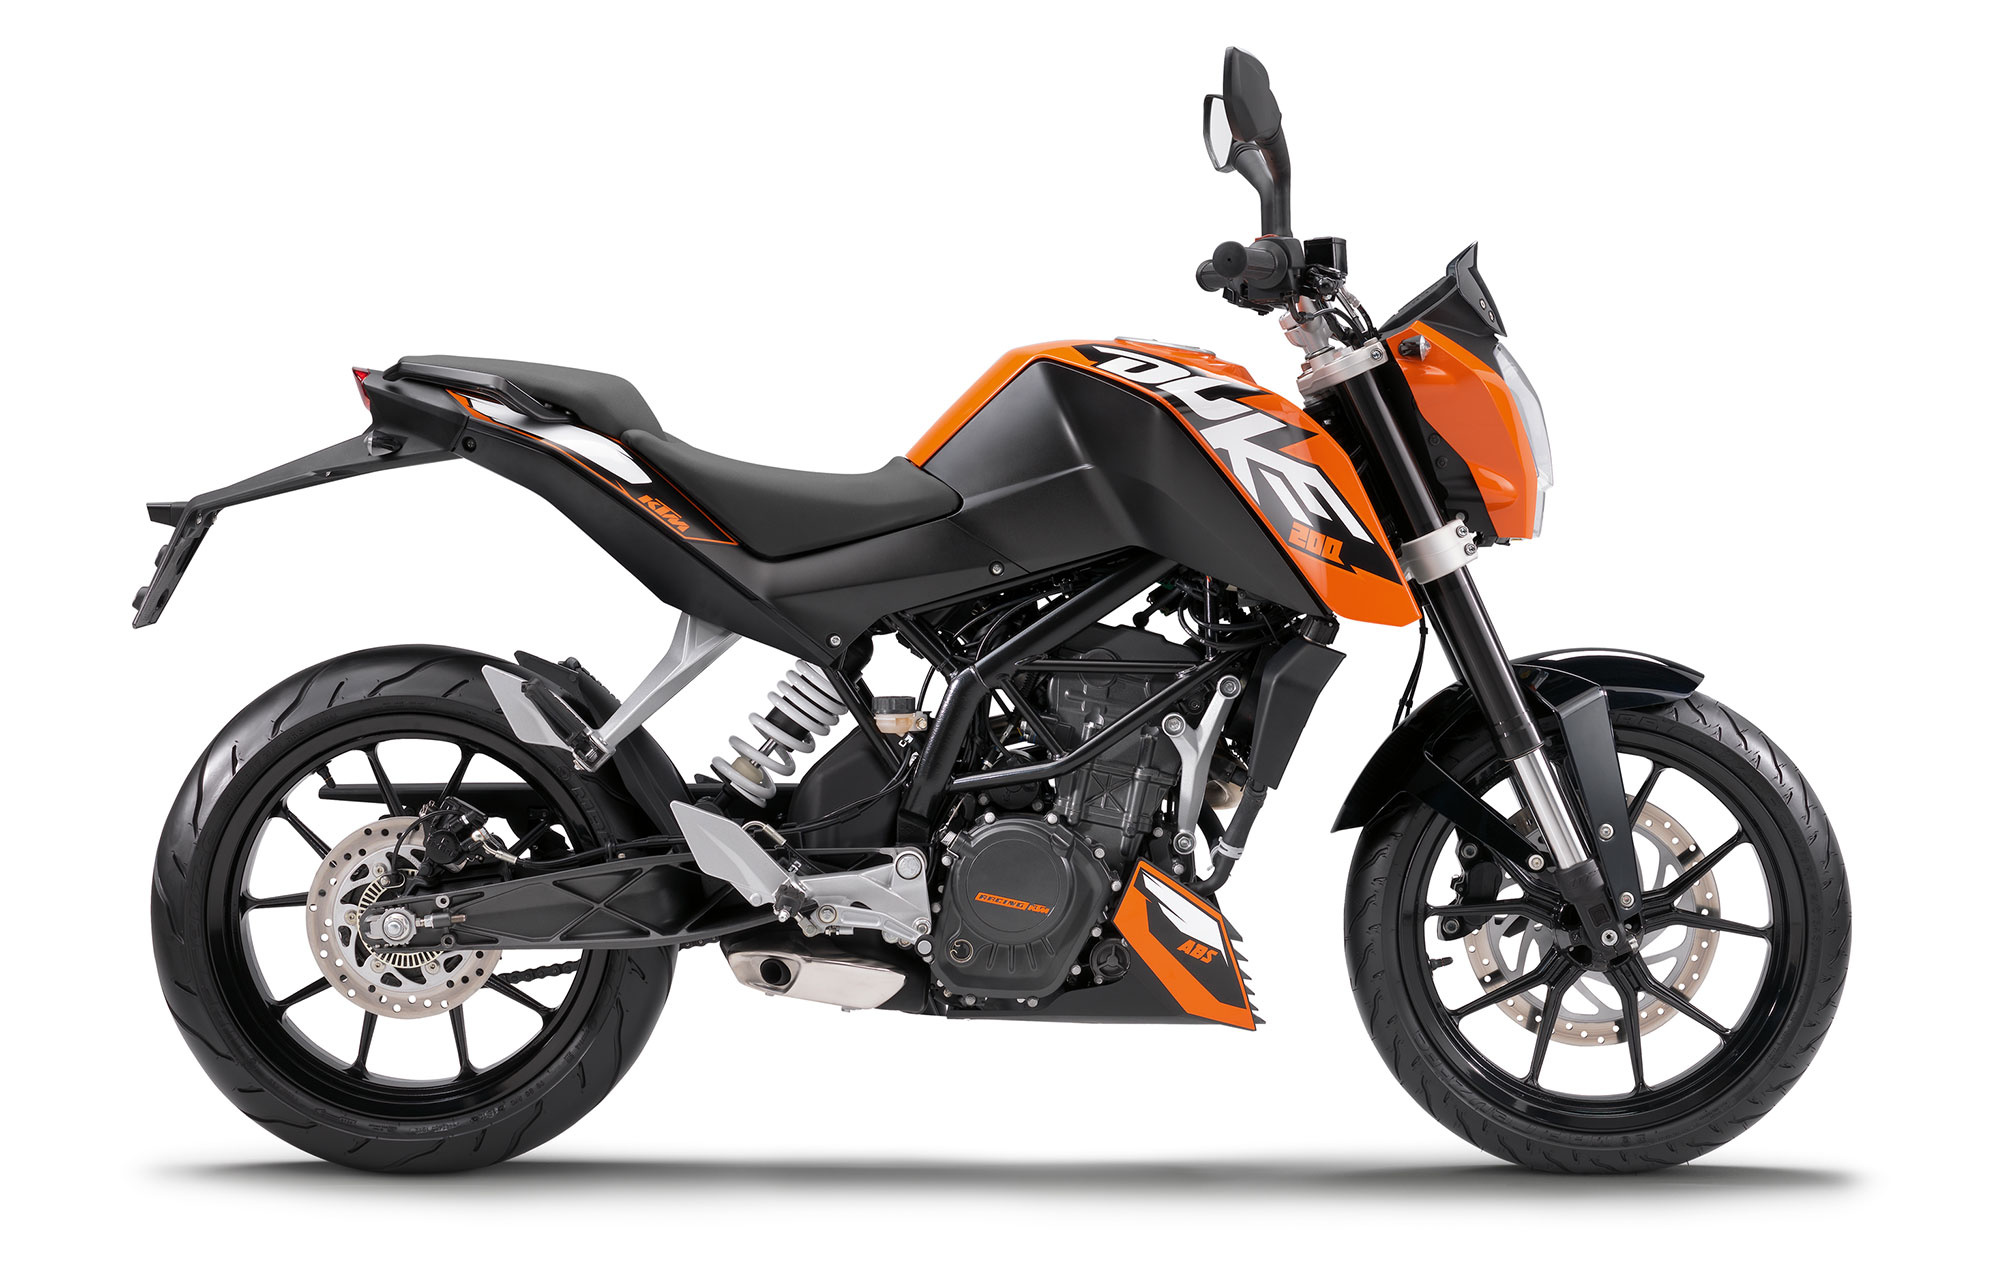 KTM 200 Duke, Auto, 2014 model, Motorcycles, 2020x1270 HD Desktop